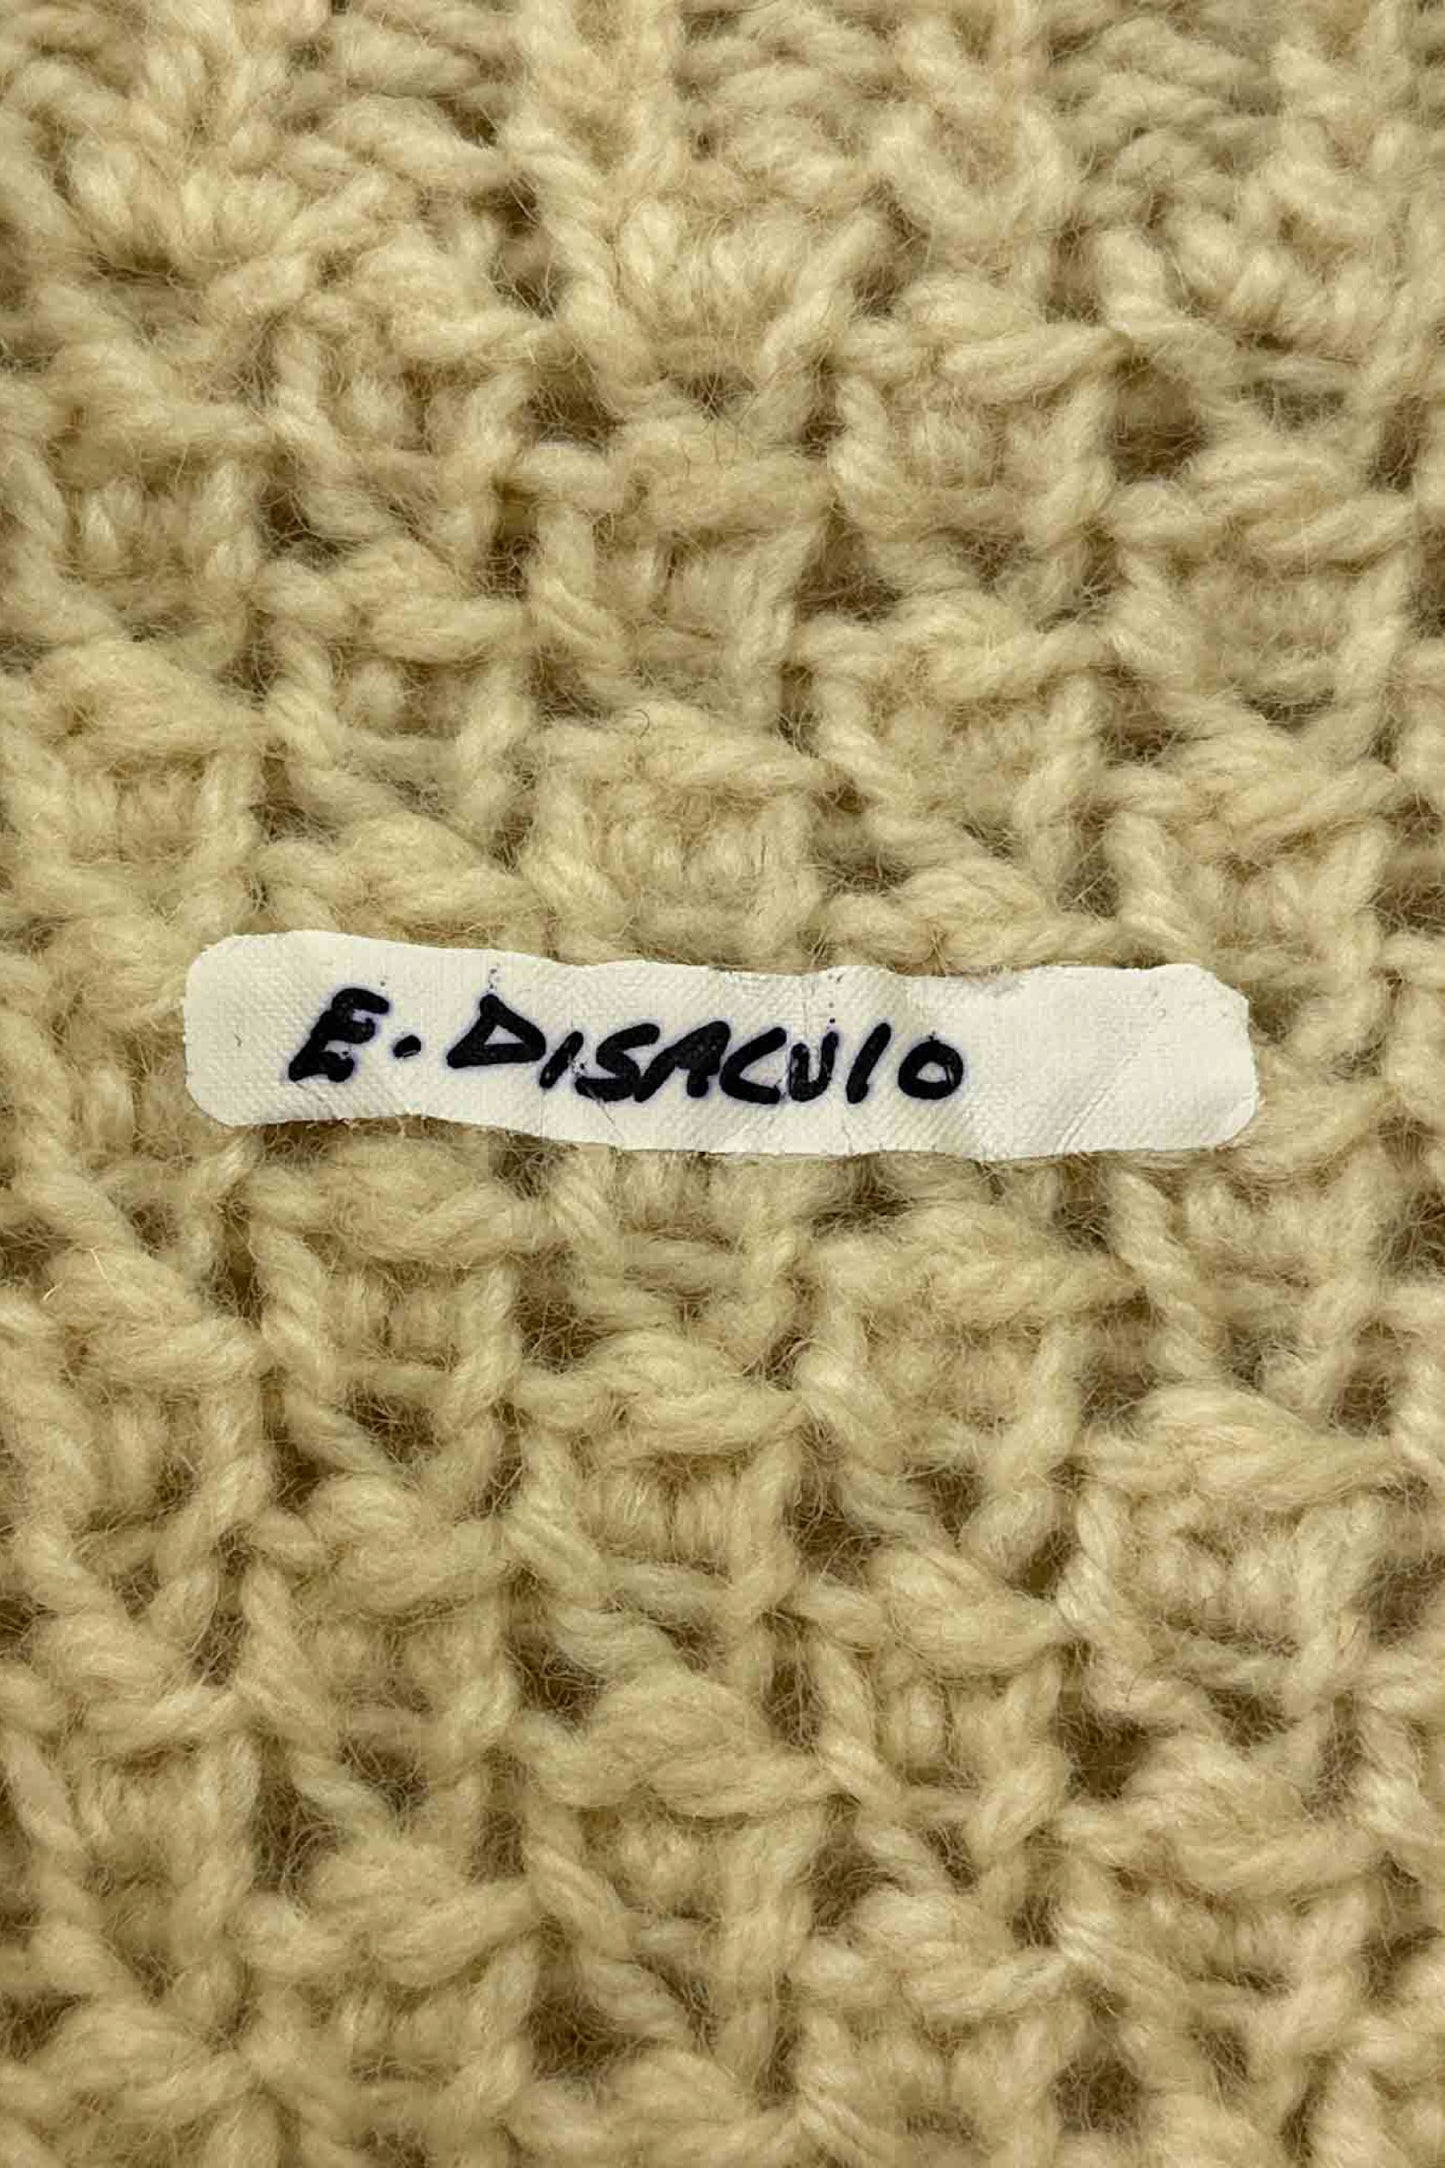 E.DISACUIO white knit cardigan